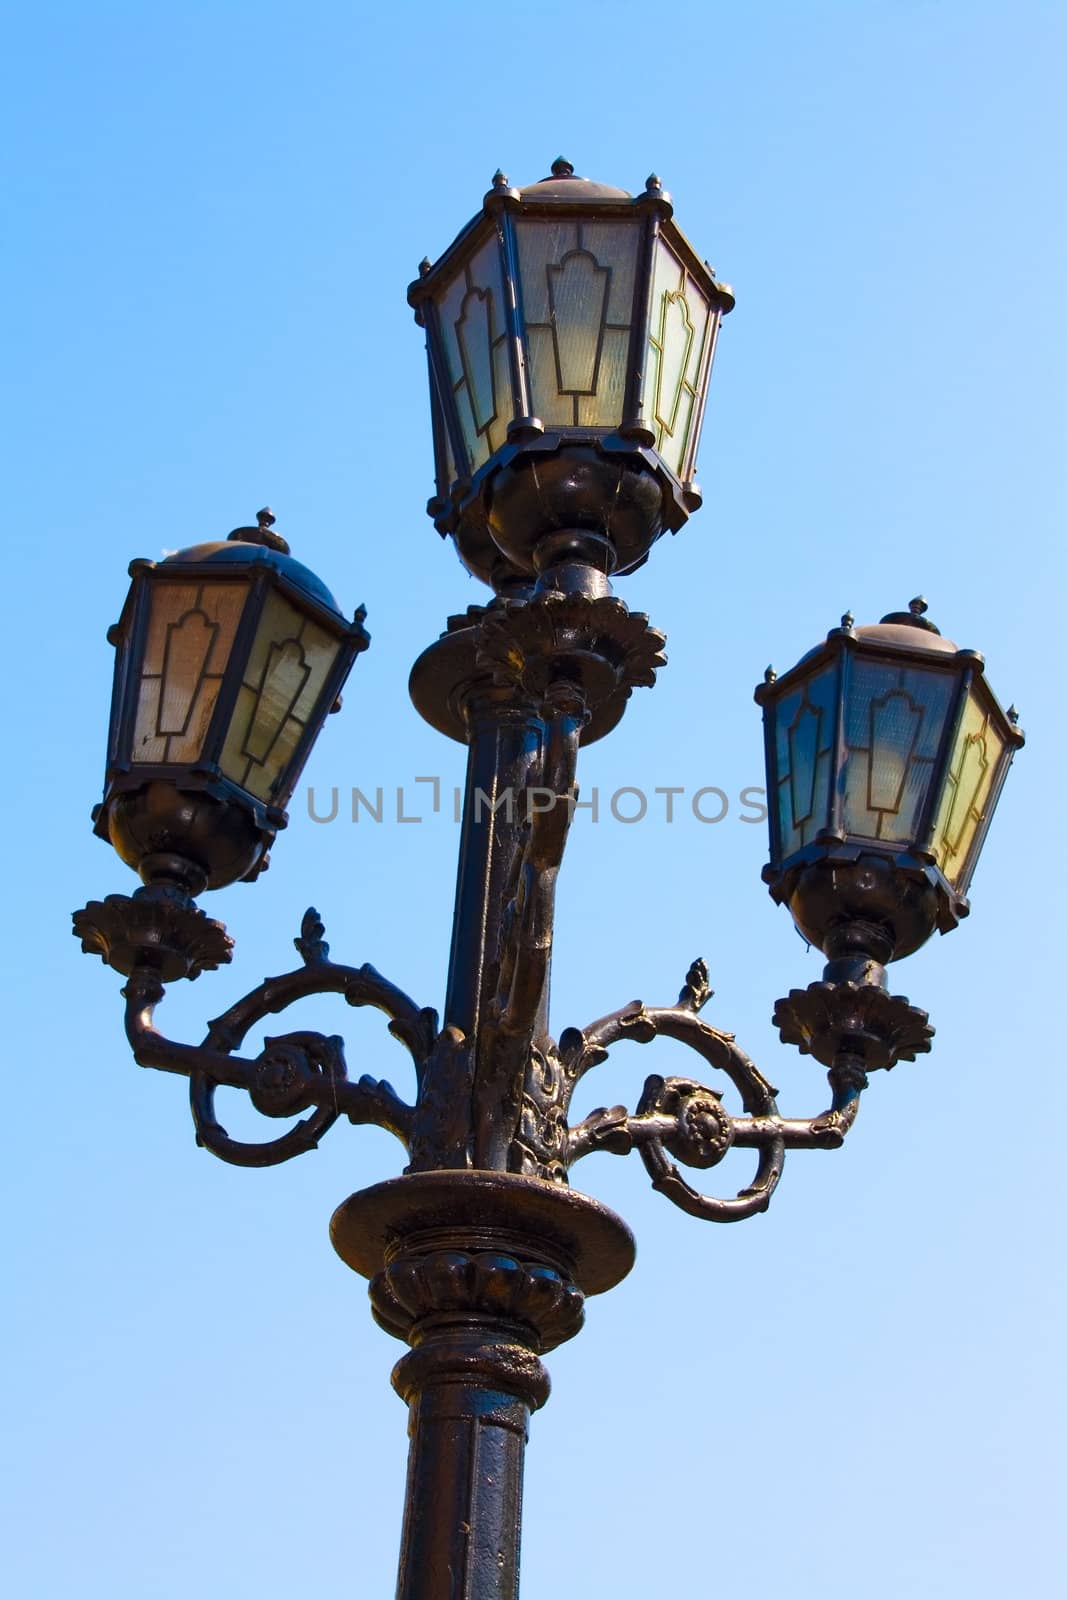 Old lantern on a blue sky backgrounds